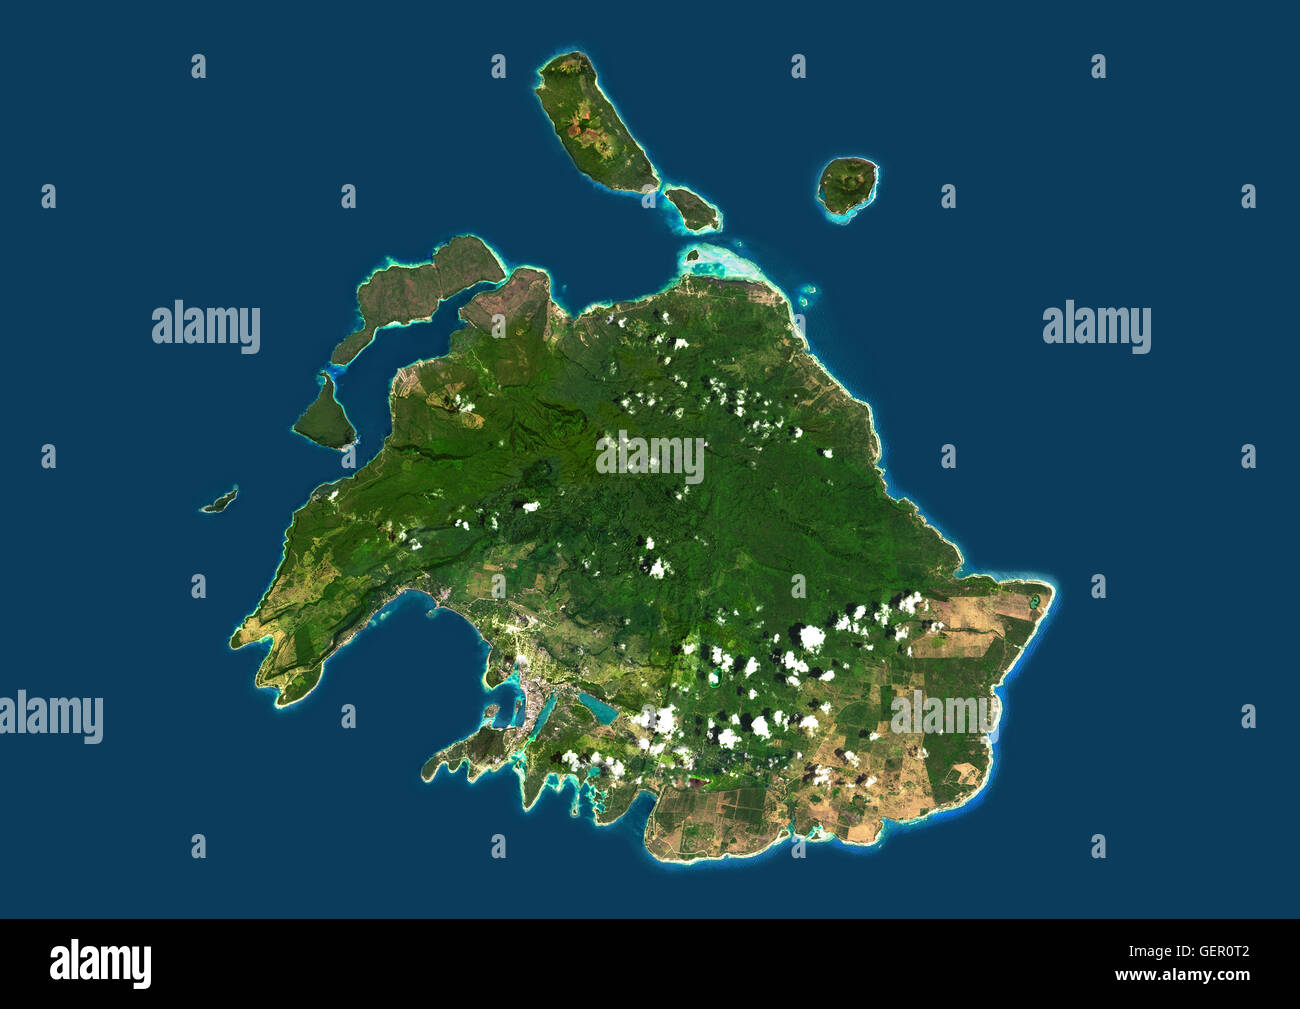 Satellitenansicht von Efate, Vanuatu. Es ist die bevölkerungsreichste Insel Vanuatu Archipel. Dieses Bild wurde aus Daten, die per Satellit Landsat 8 im Jahr 2014 zusammengestellt. Stockfoto